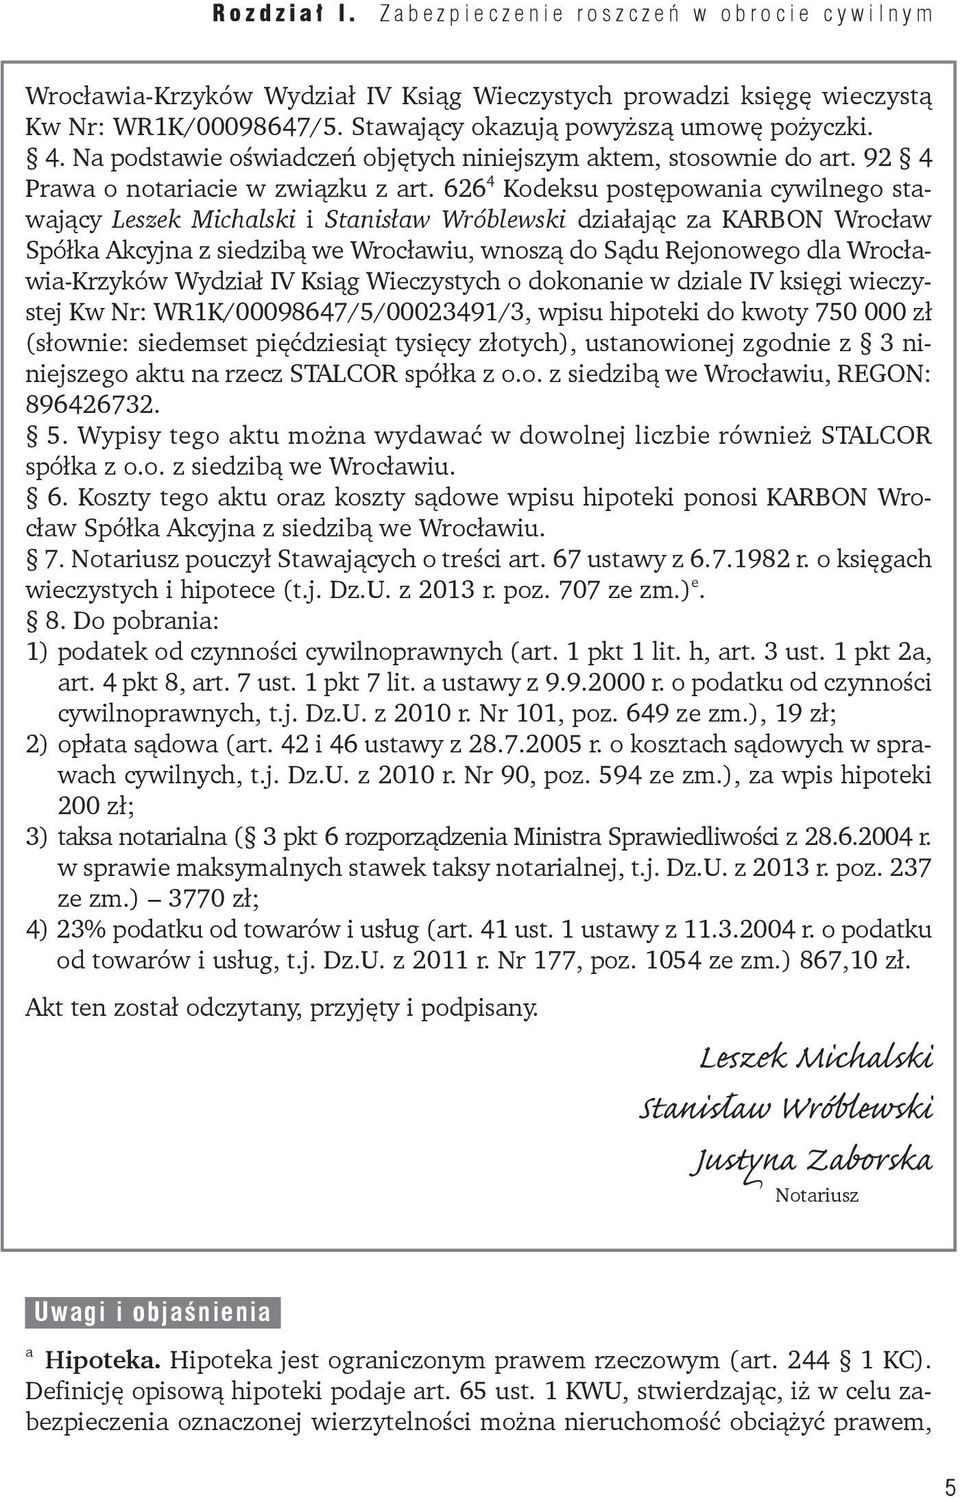 626 4 Kodeksu postępowania cywilnego stawający Leszek Michalski i Stanisław Wróblewski działając za KARBON Wrocław Spółka Akcyjna z siedzibą we Wrocławiu, wnoszą do Sądu Rejonowego dla